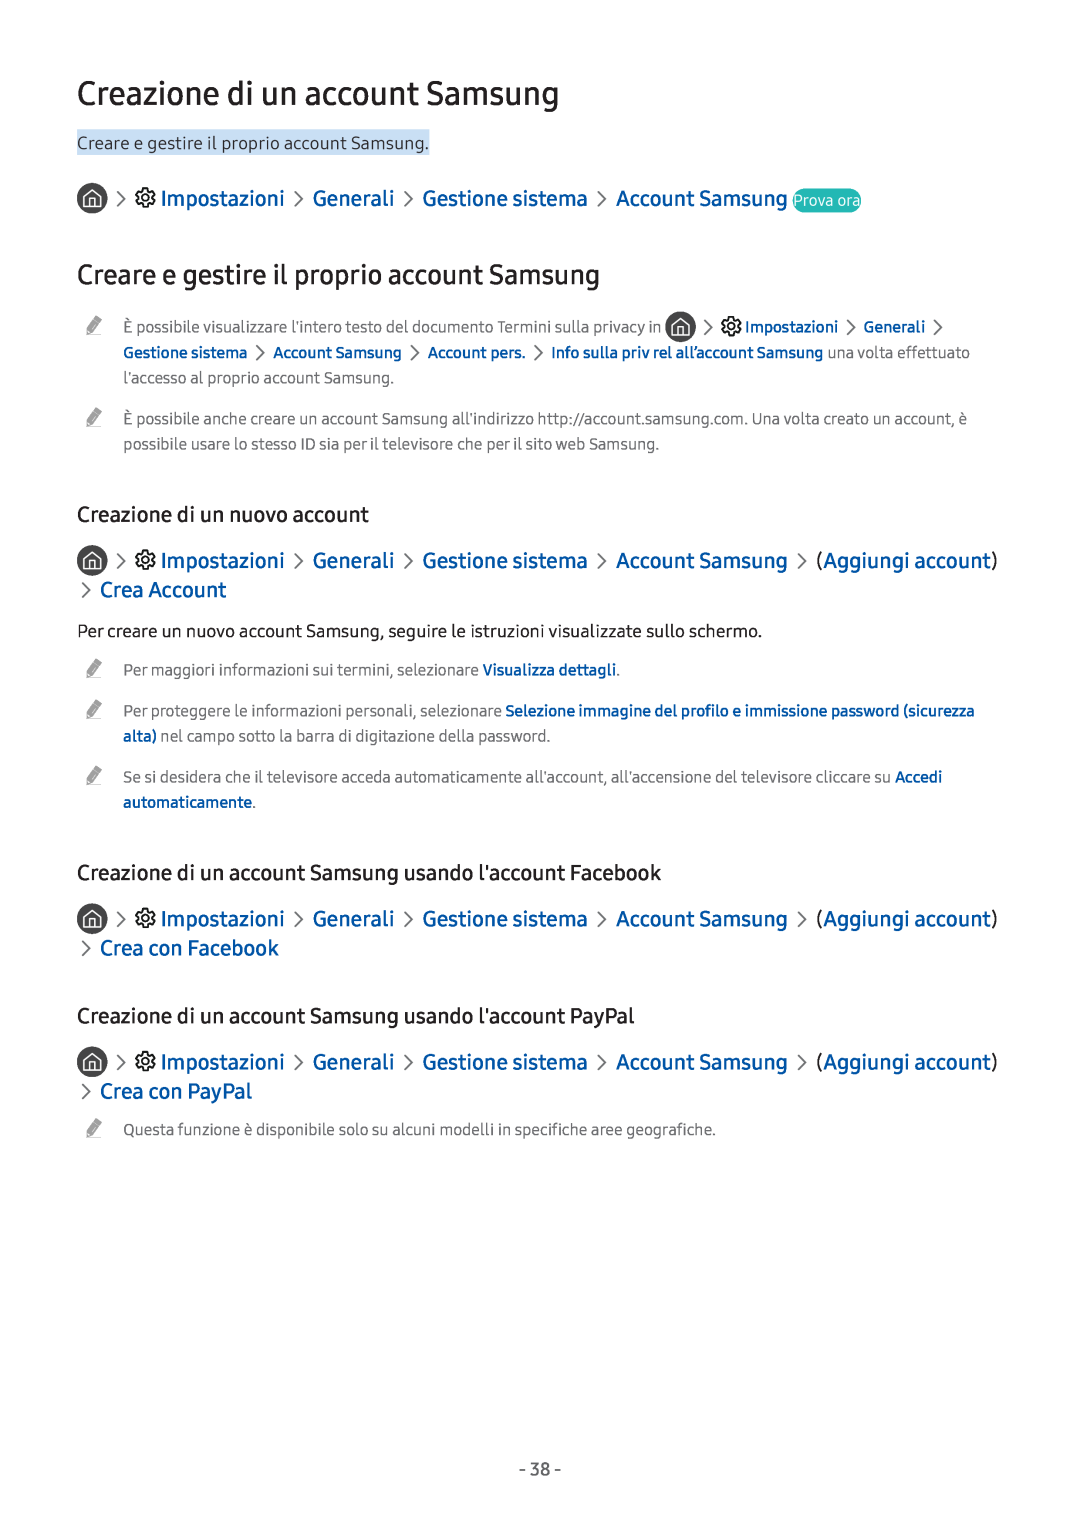 Samsung UE32M5650AUXZG manual Creazione di un account Samsung, Creare e gestire il proprio account Samsung, Crea Account 